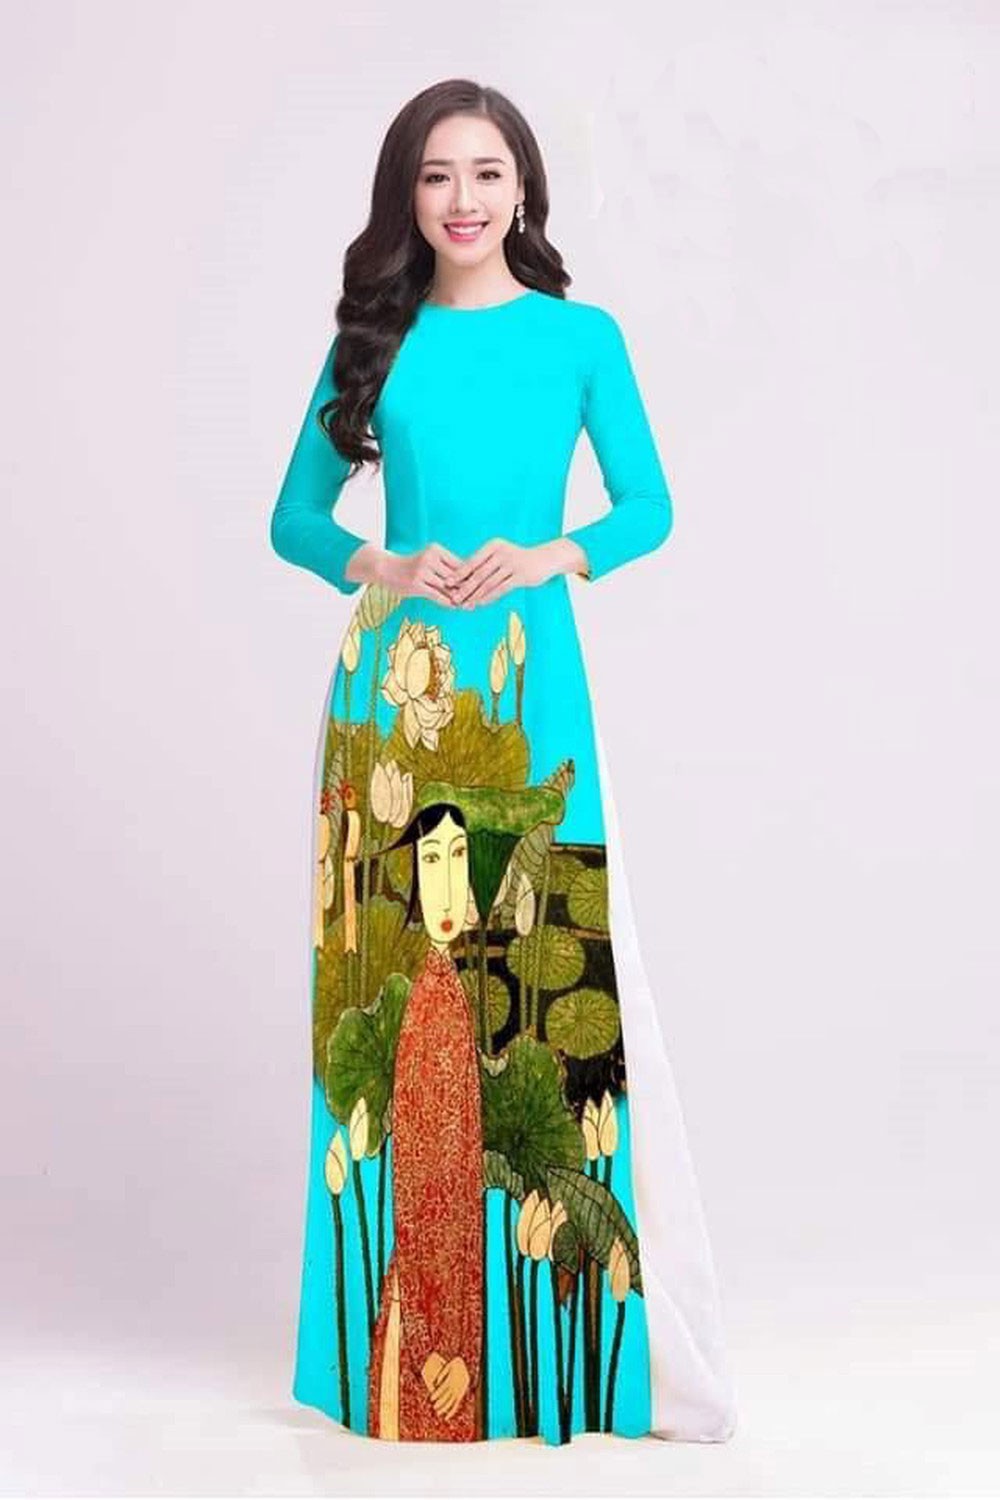 Áo dài là kiệt tác của nghệ thuật trang phục truyền thống Việt Nam, với sự sang trọng, thanh lịch và quý phái. Nếu bạn yêu thích những bộ trang phục mang tính đặc trưng của văn hóa dân tộc, thì hãy đến và ngắm nhìn hình ảnh về áo dài truyền thống này.